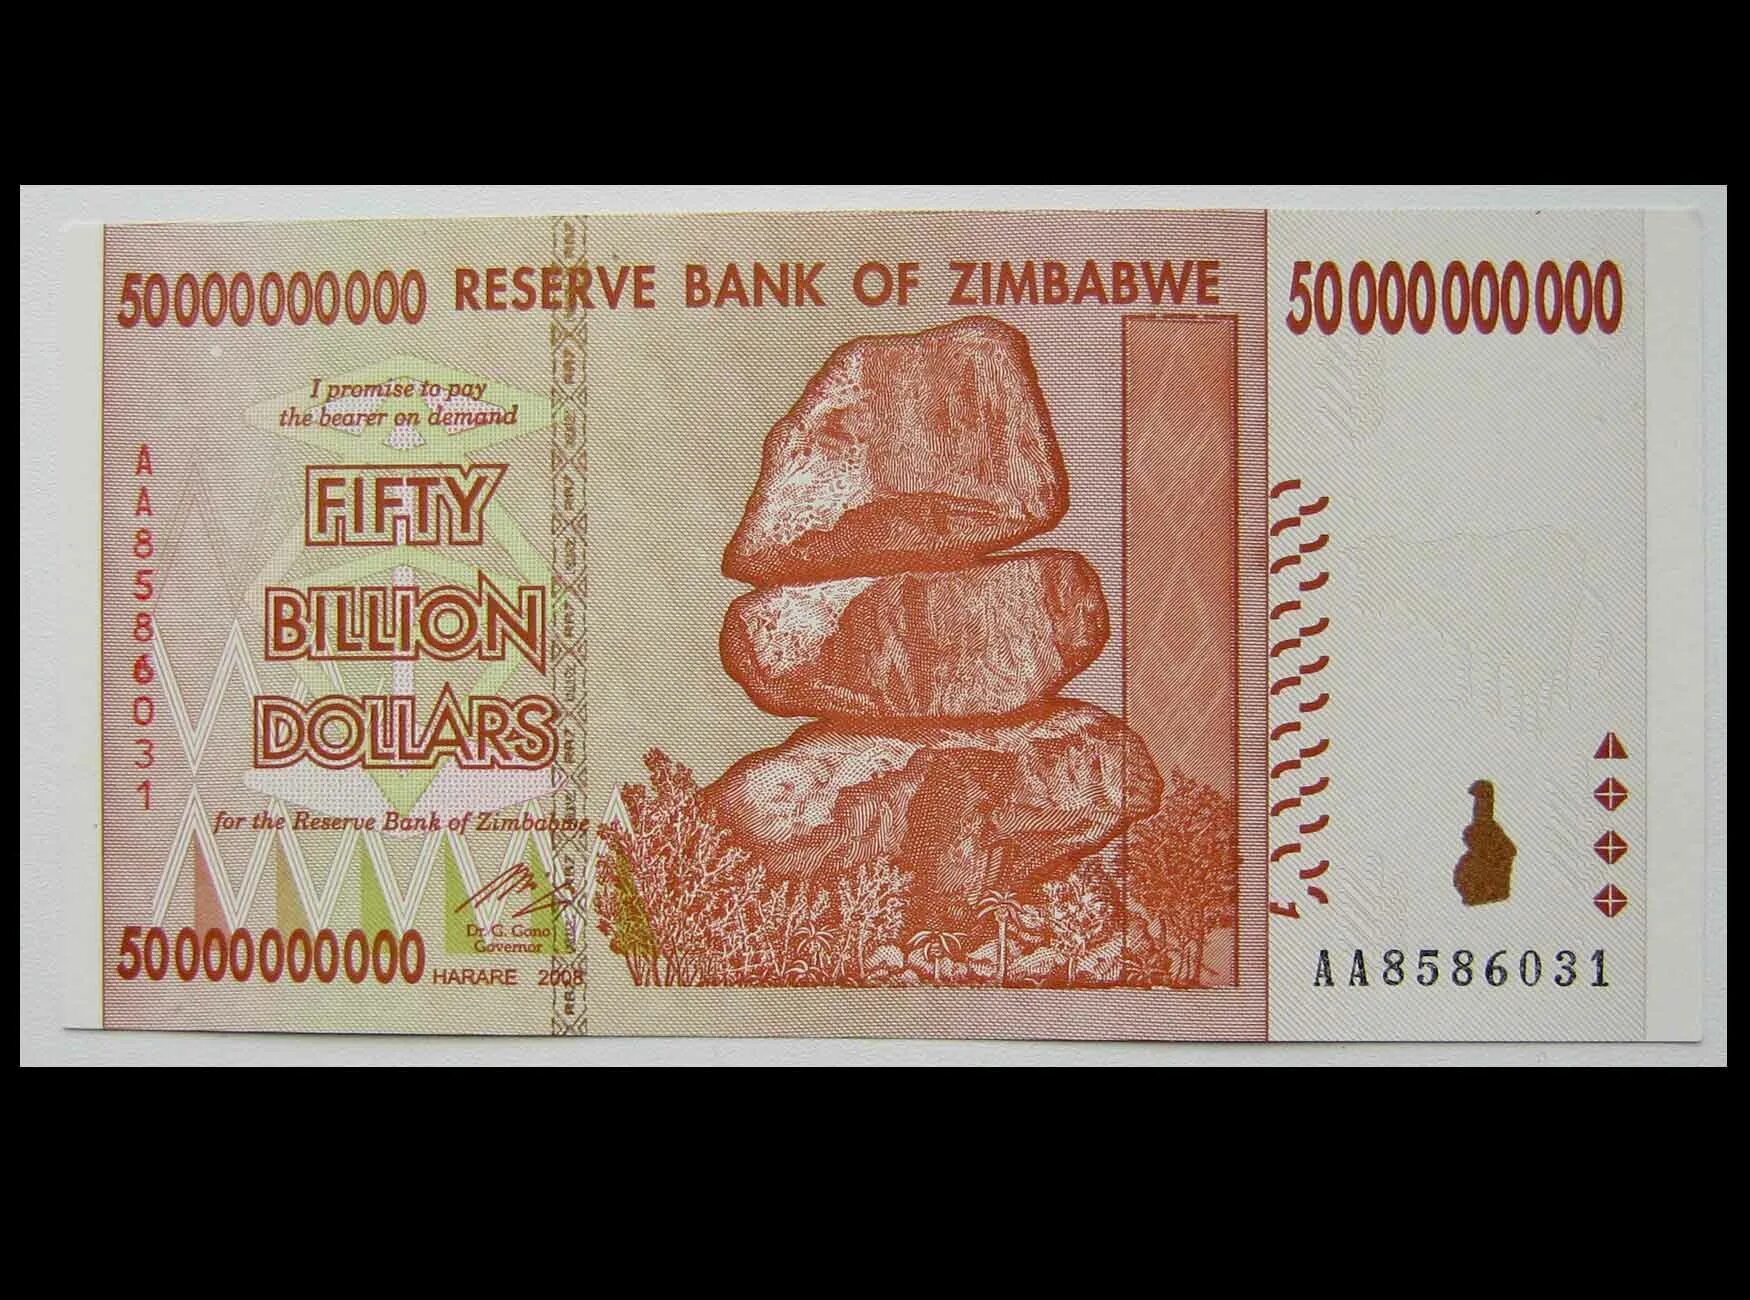 Зимбабве банкнота 1000000000 долларов. Купюра Зимбабве 100 000 000 000 000 долларов. 50 000 000 000зимбаба долар. Банкнота 10 триллионов долларов 2008 Зимбабве. 1 млрд зимбабвийских долларов